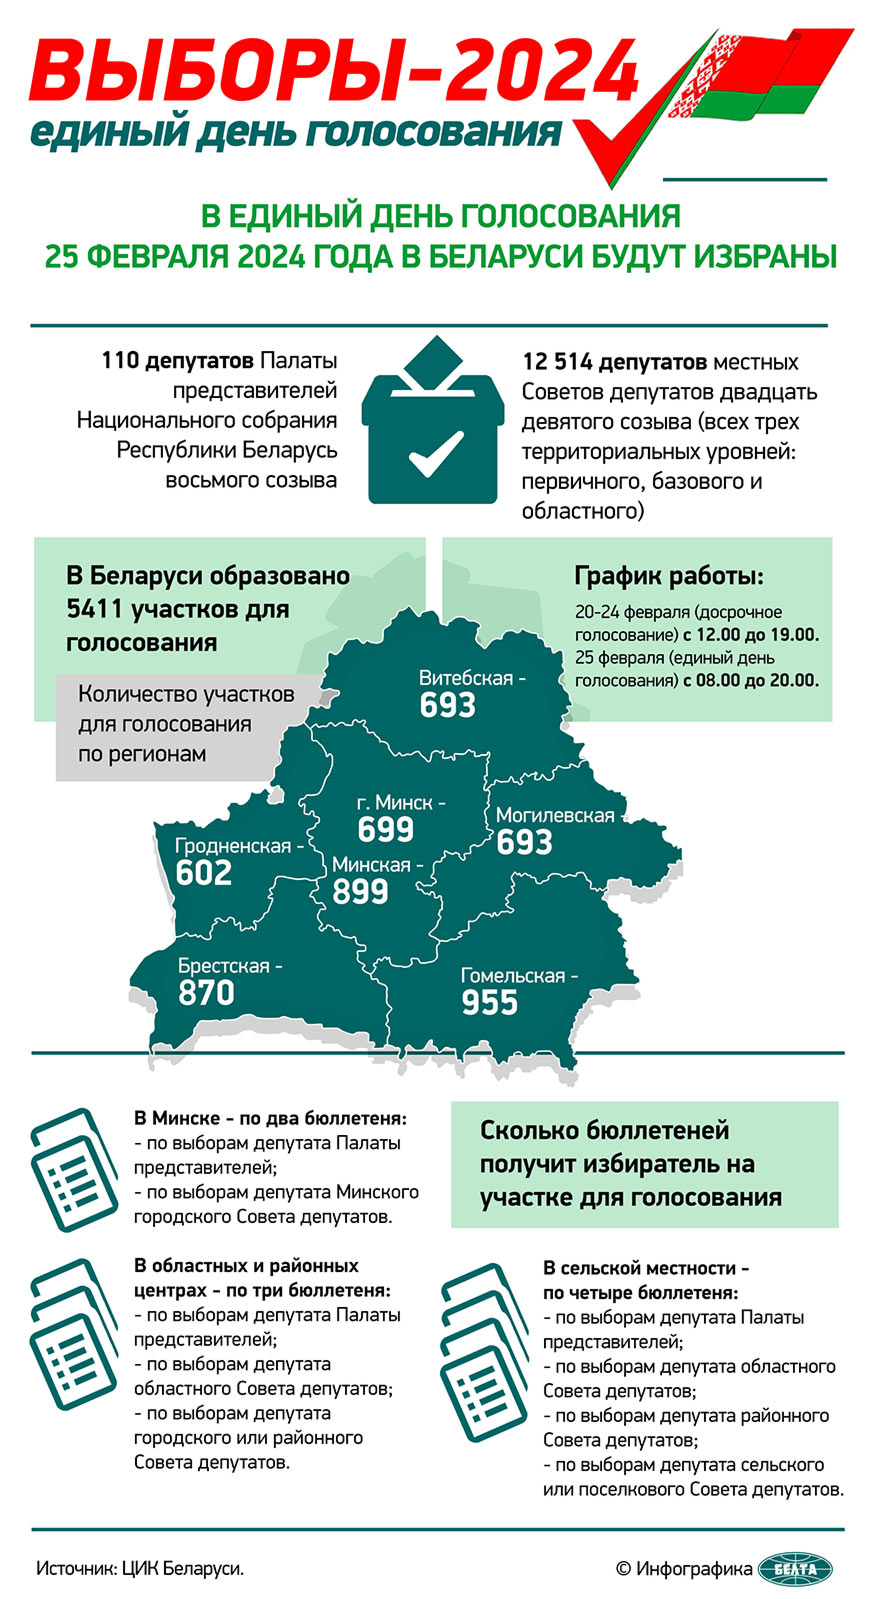 ЦИК: явка избирателей на выборах депутатов на 16.00 составила 65,4%